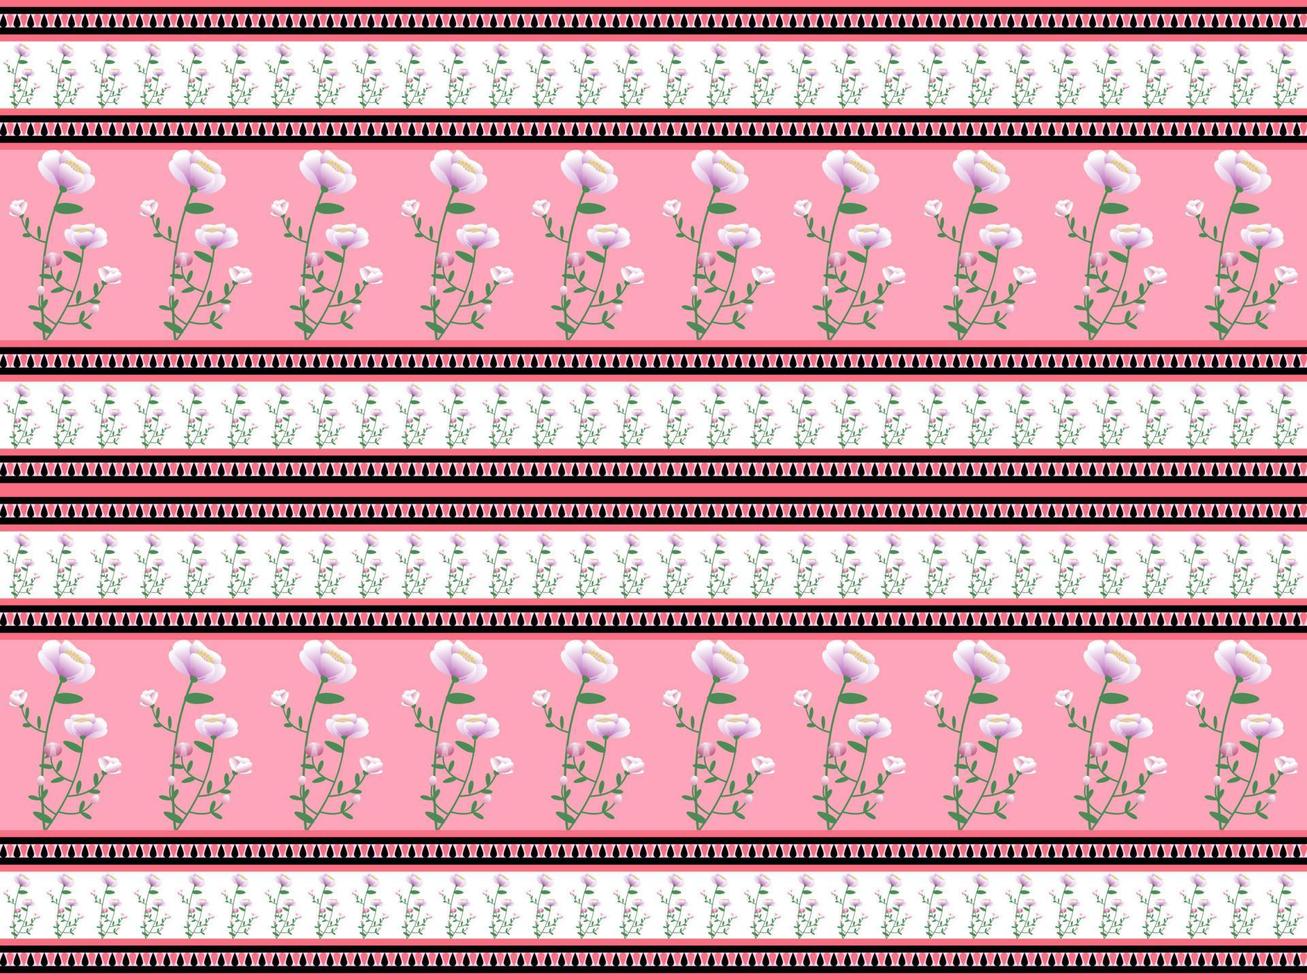 padrão perfeito de flores no fundo rosa vetor